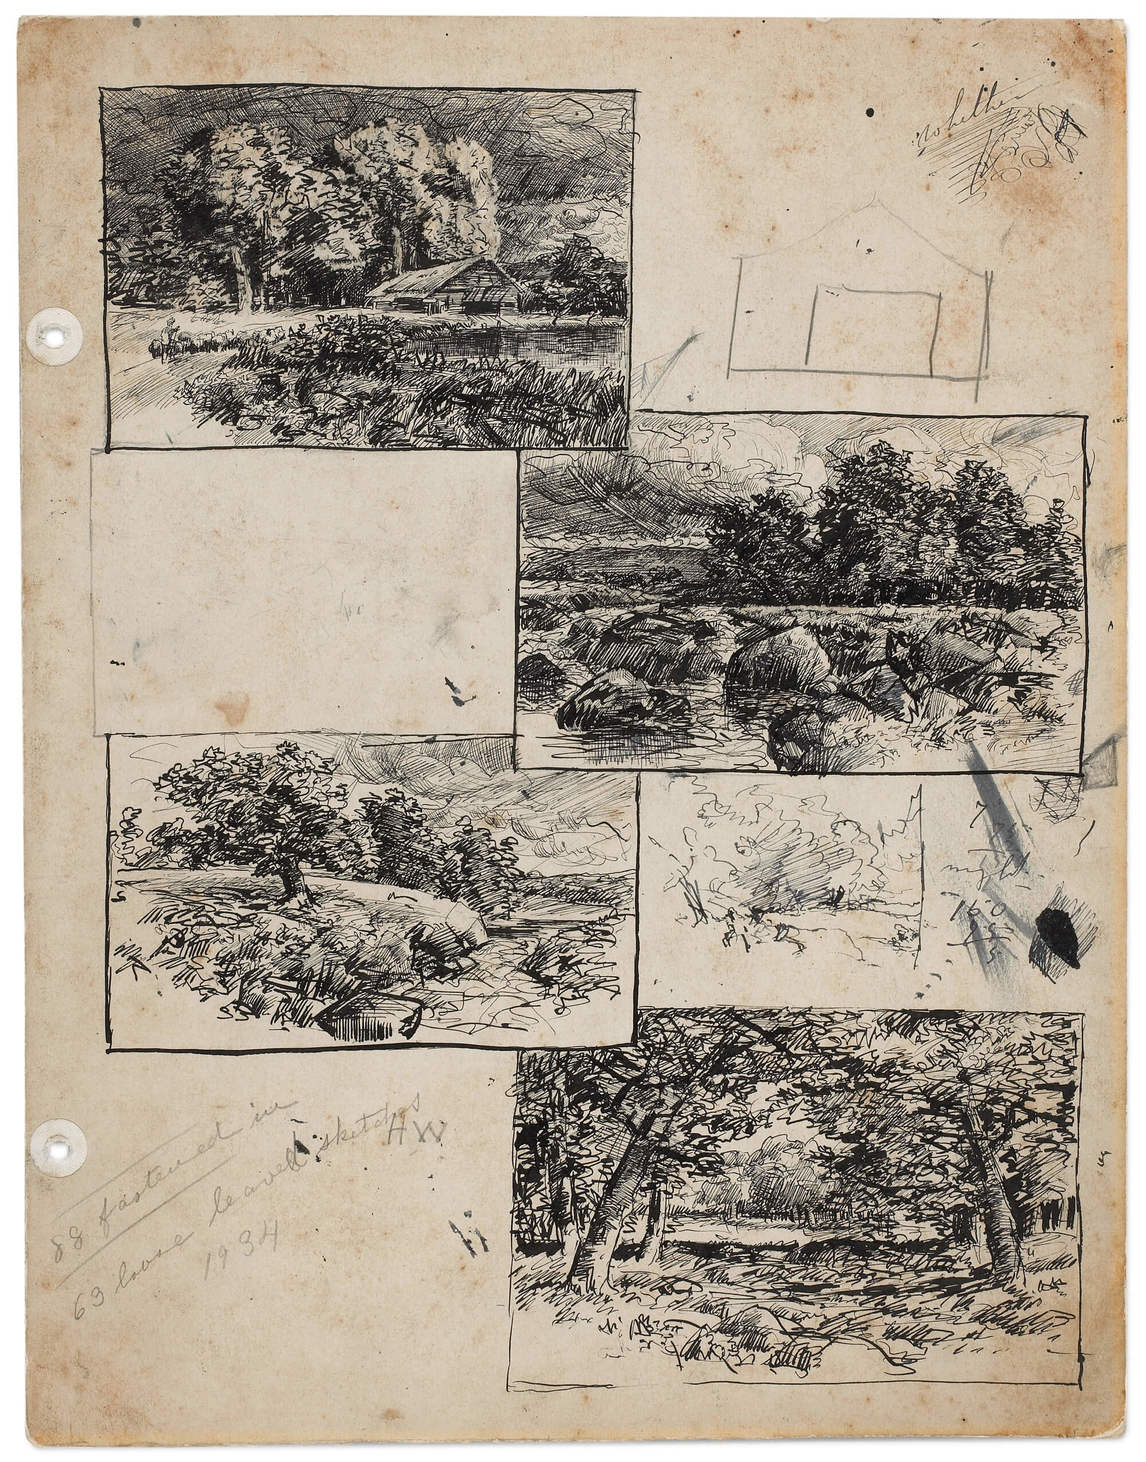 Homer Watson, dessins de paysage et esquisse préliminaire d’un bâtiment, début des années 1880